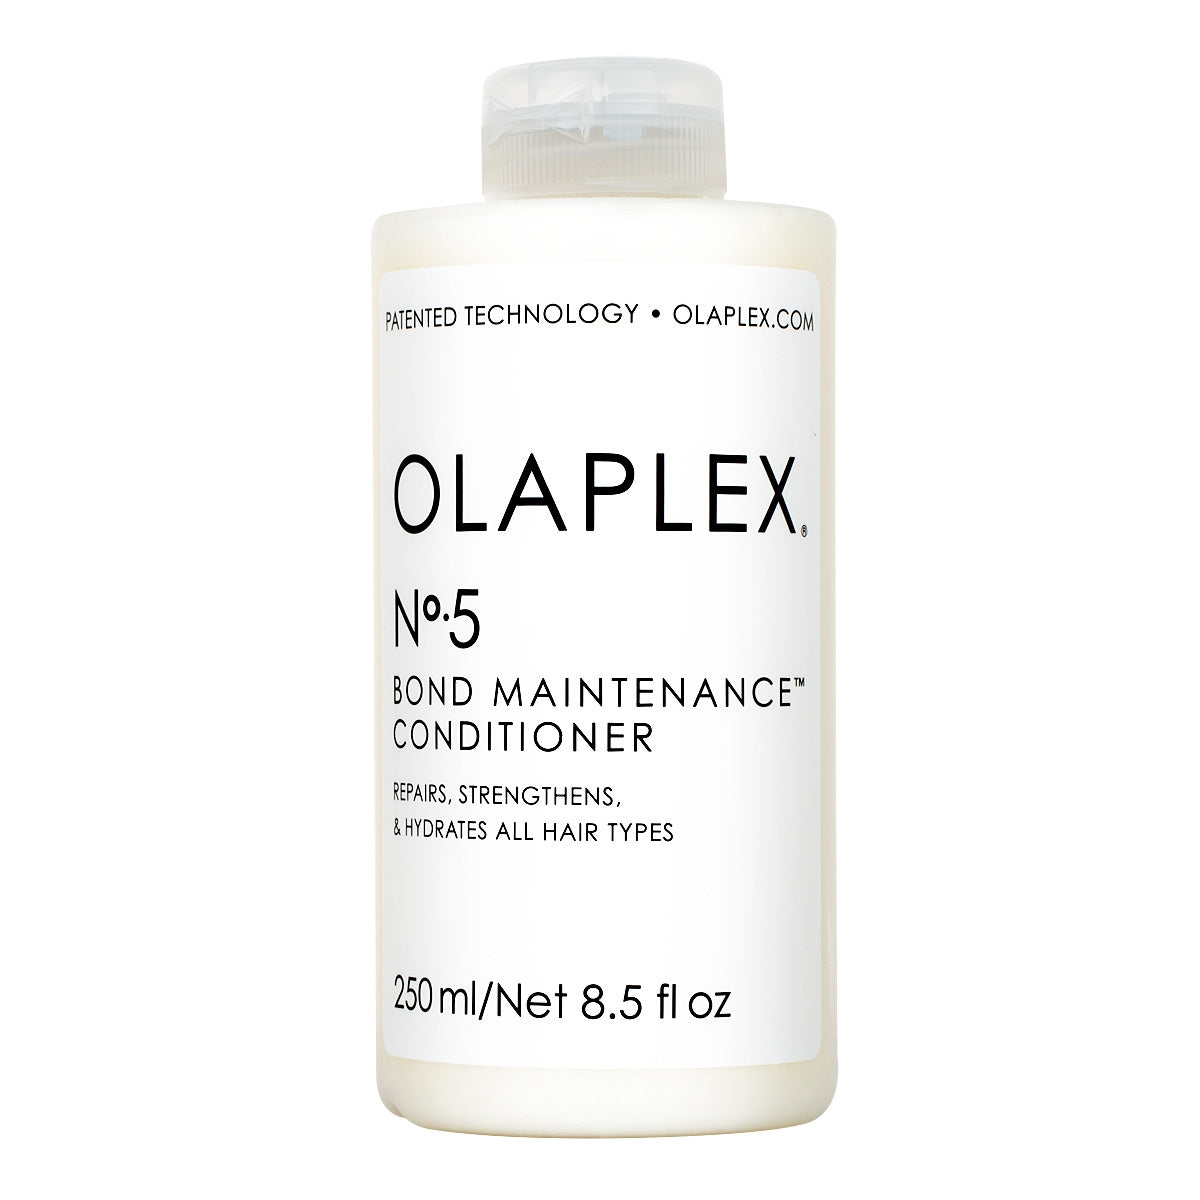 OLAPLEX NO. 5 CONDITIONER